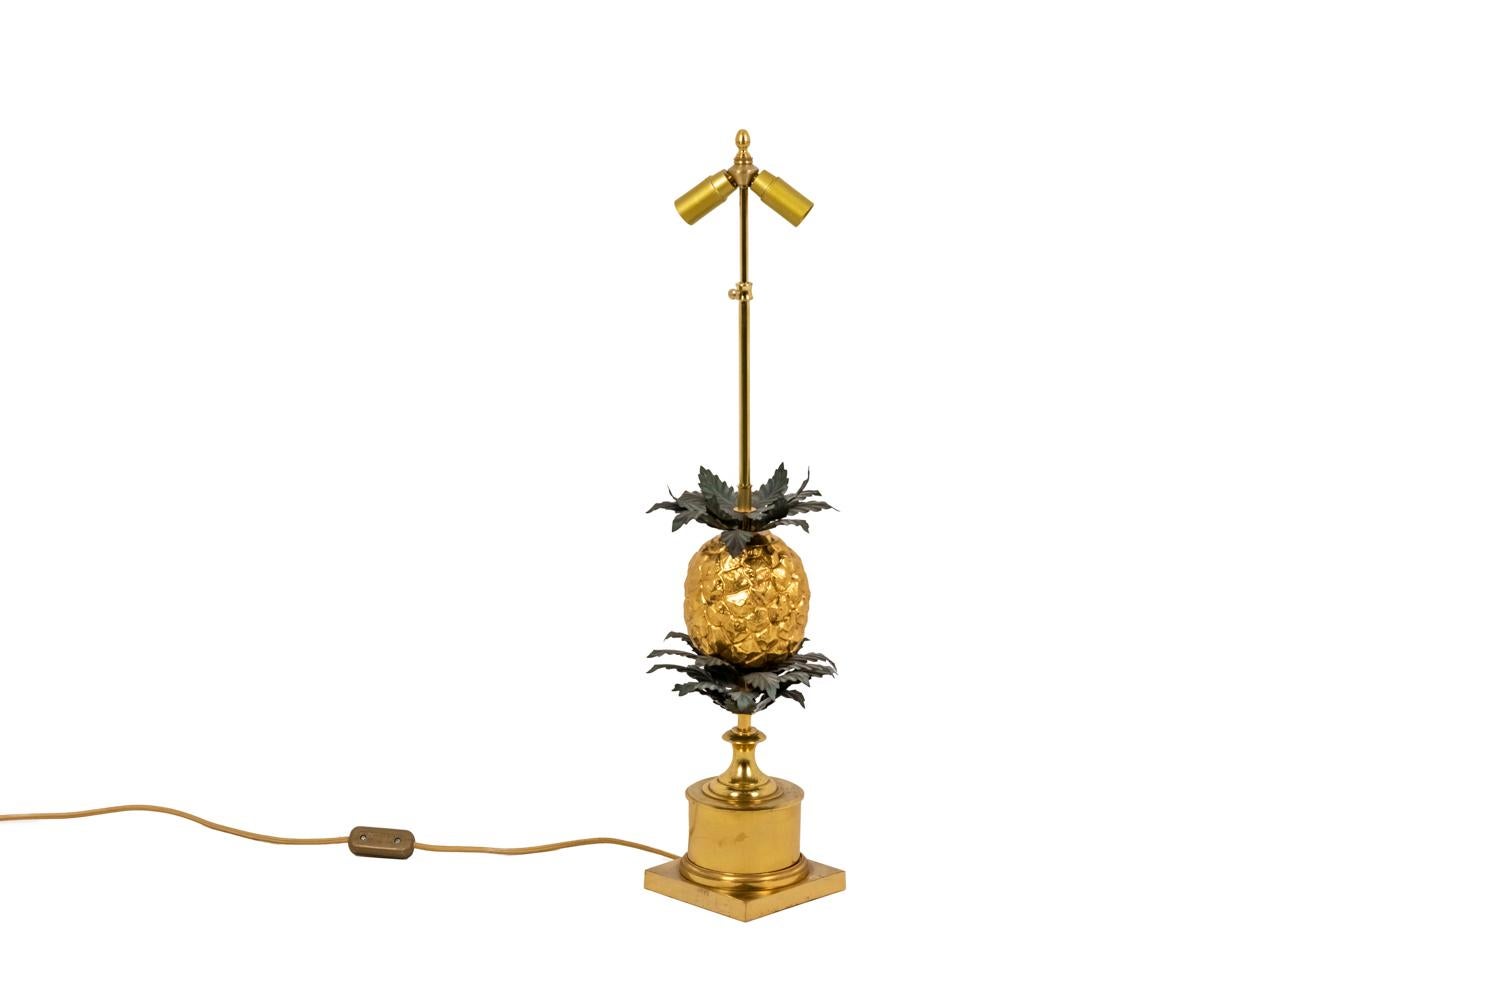 Grande lampe représentant un ananas stylisé en bronze doré et couronné de feuilles en laiton repoussé et doré. Sous l'ananas, l'arbre est symbolisé par une plus importante triple couronne de feuilles en laiton doré. L'ensemble repose sur une base en